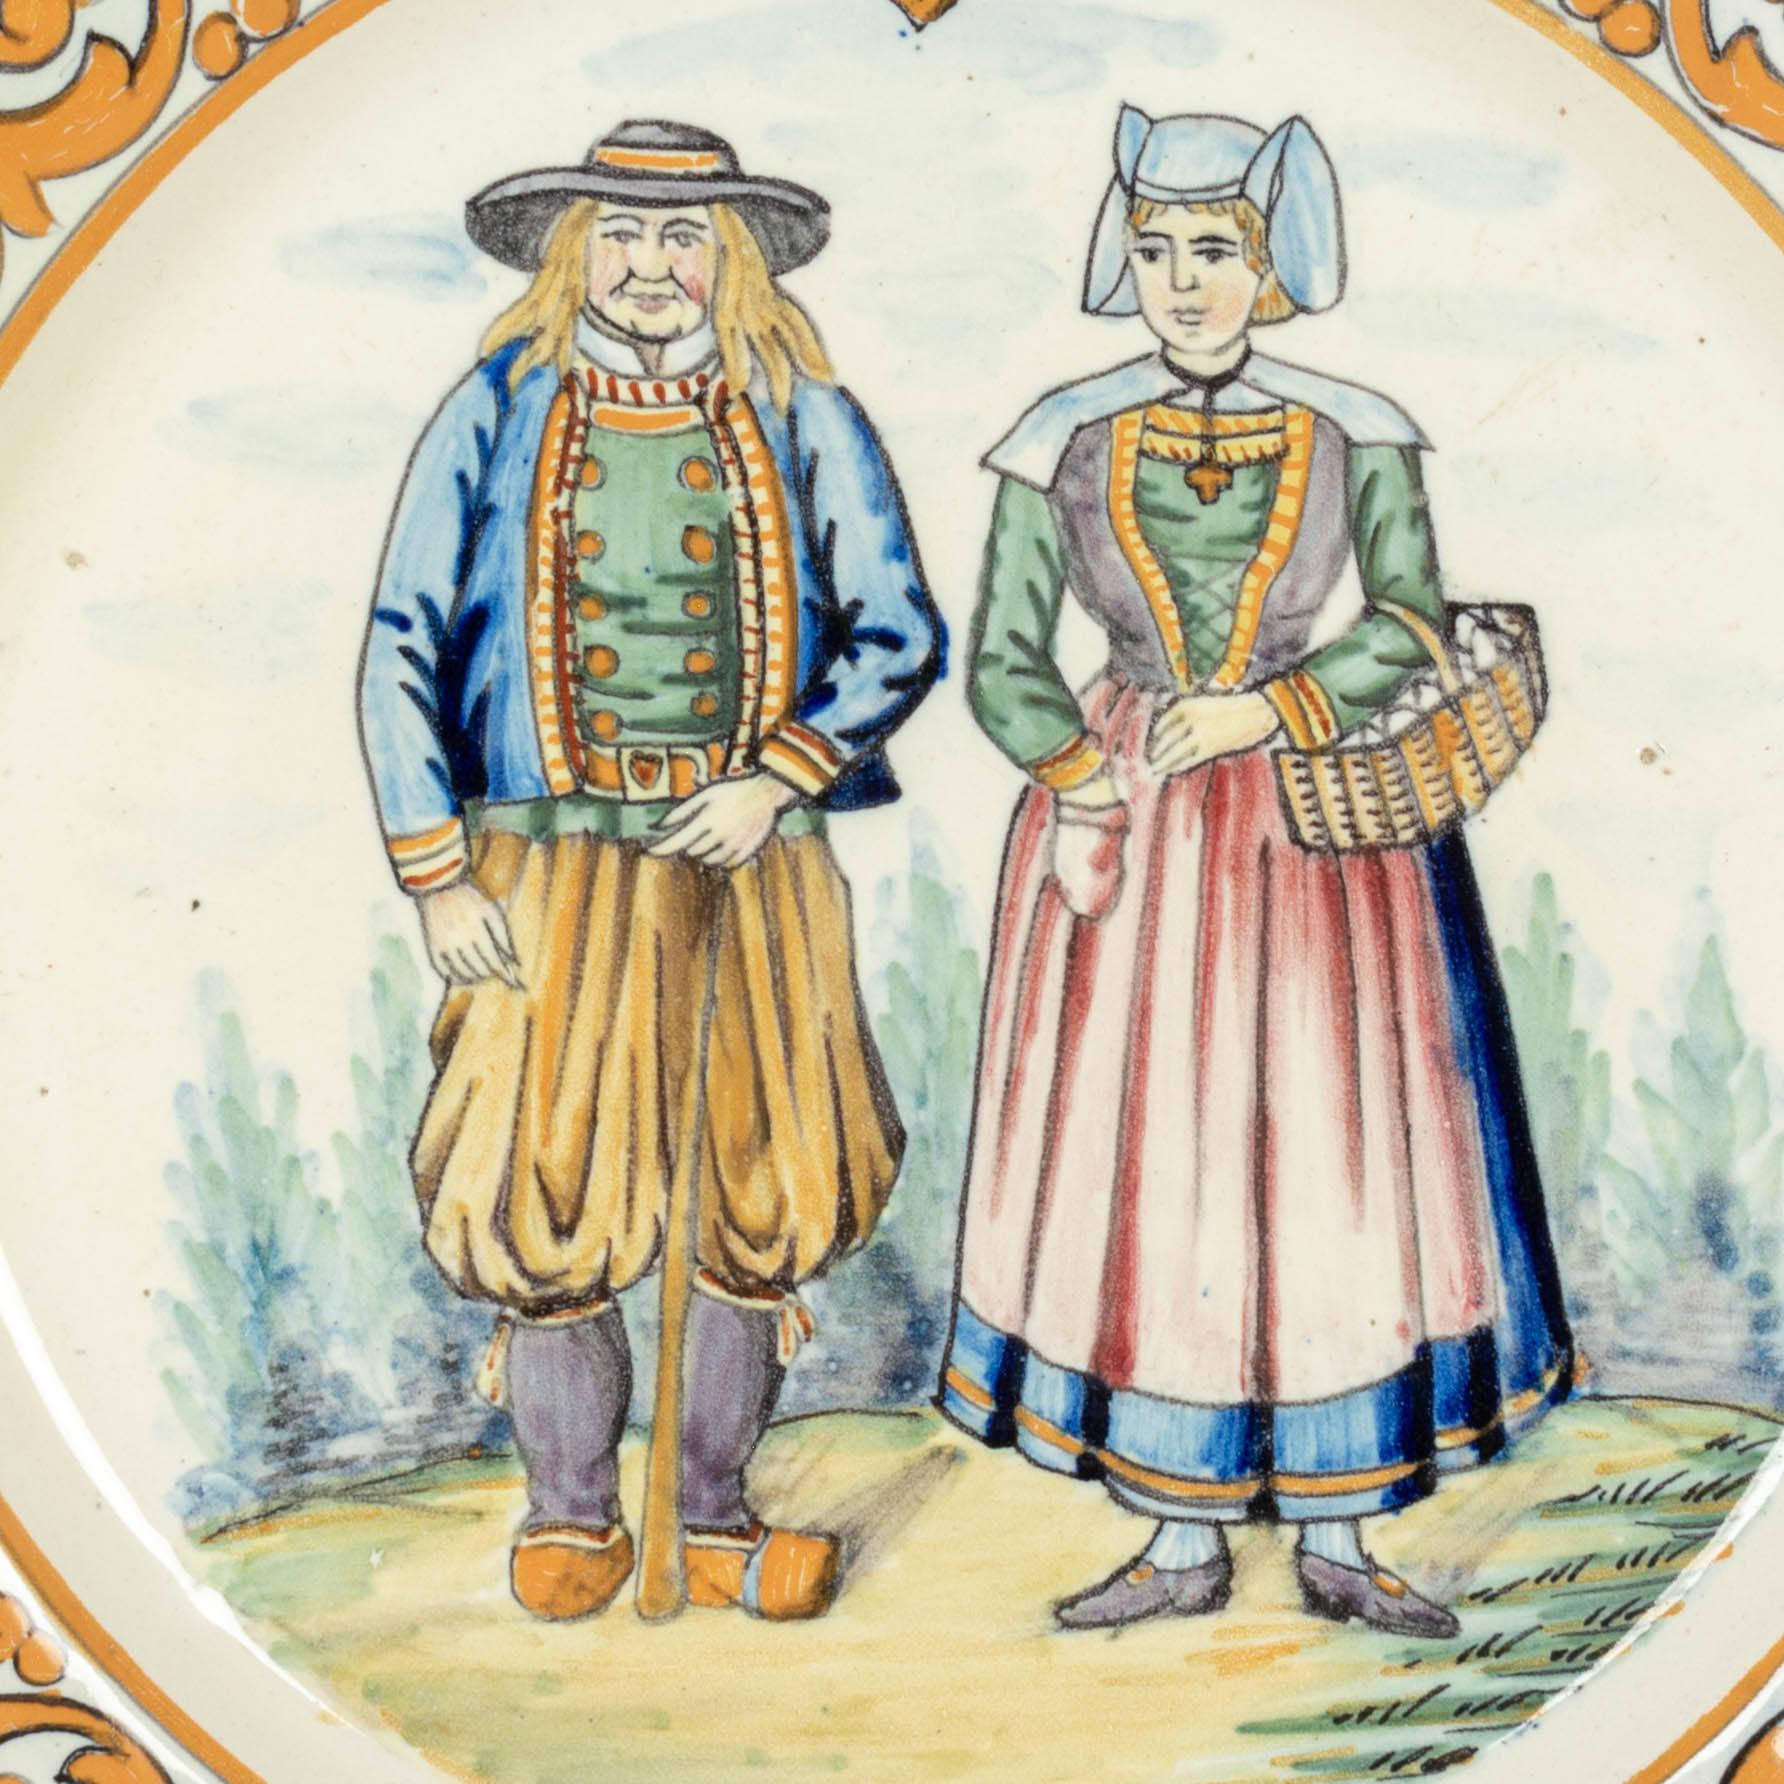 Handbemalter dekorativer Teller aus französischer Fayence von Henriot Quimper, der ein bretonisches Paar in traditioneller Kleidung zeigt. Orangefarbene Umrandung mit Blättern und einem Wappen der Quimper-Krone oben. Ein dicker Teller von guter